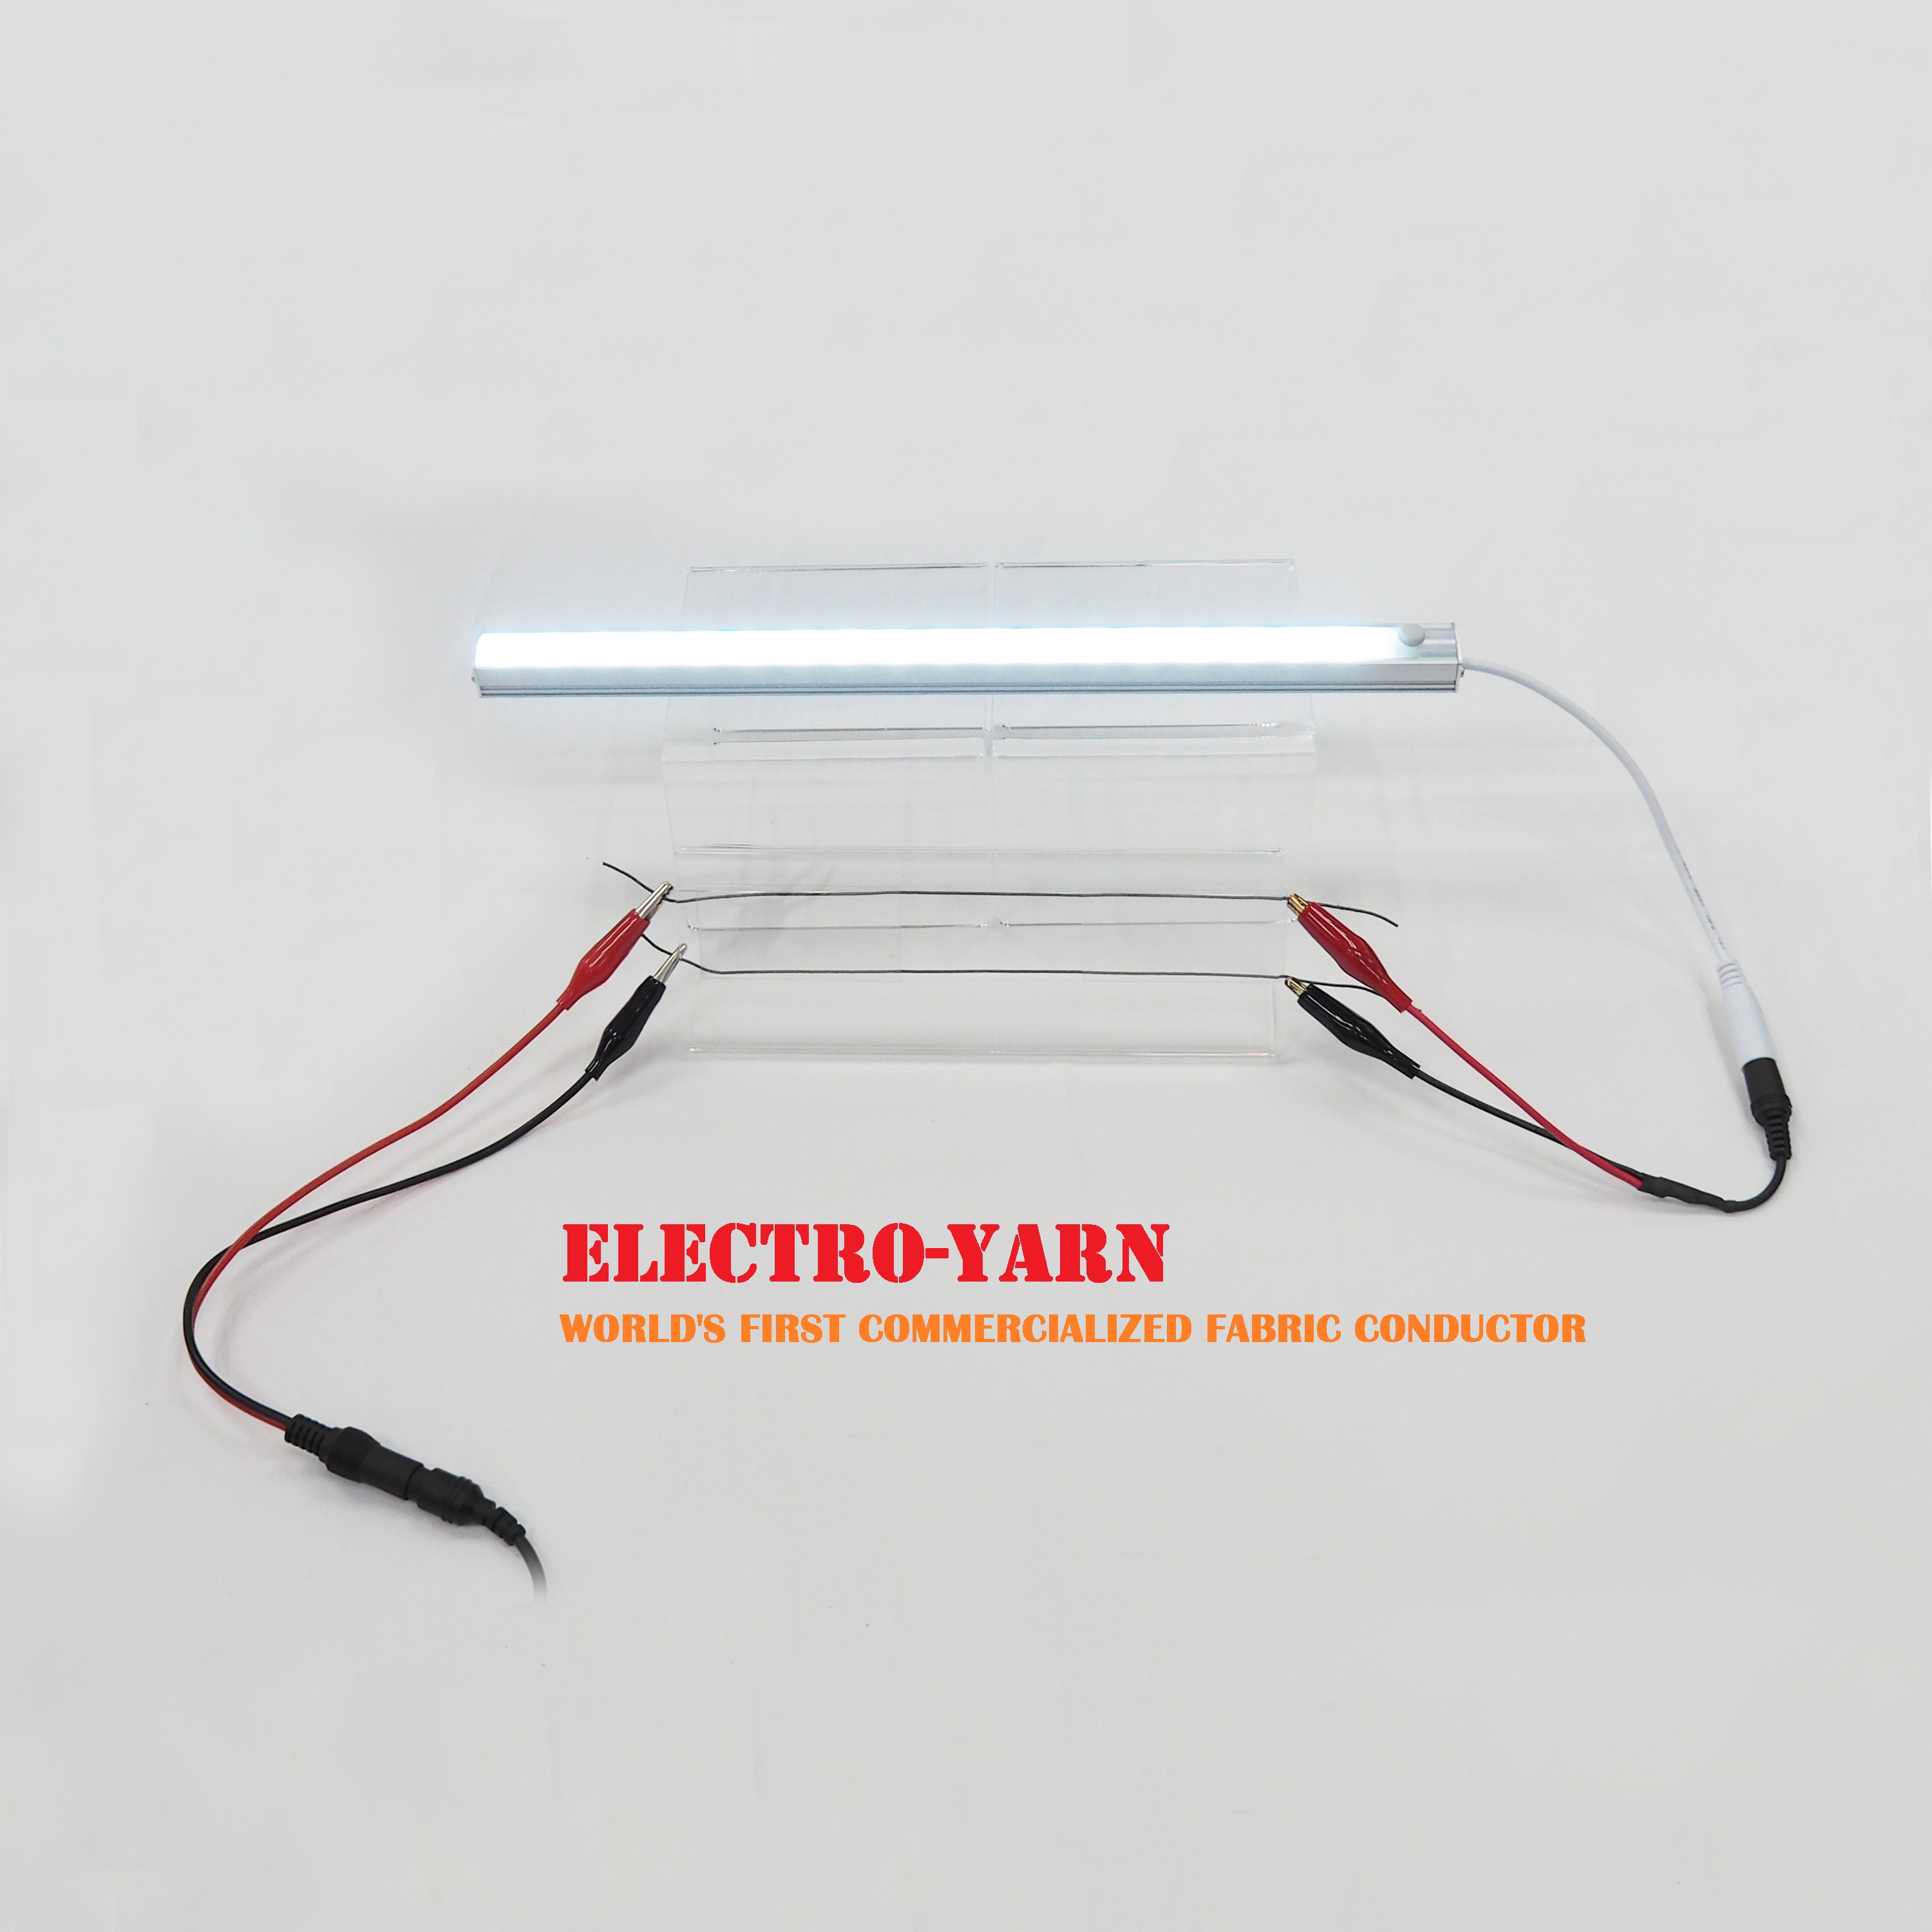 Electro-Yarn Image